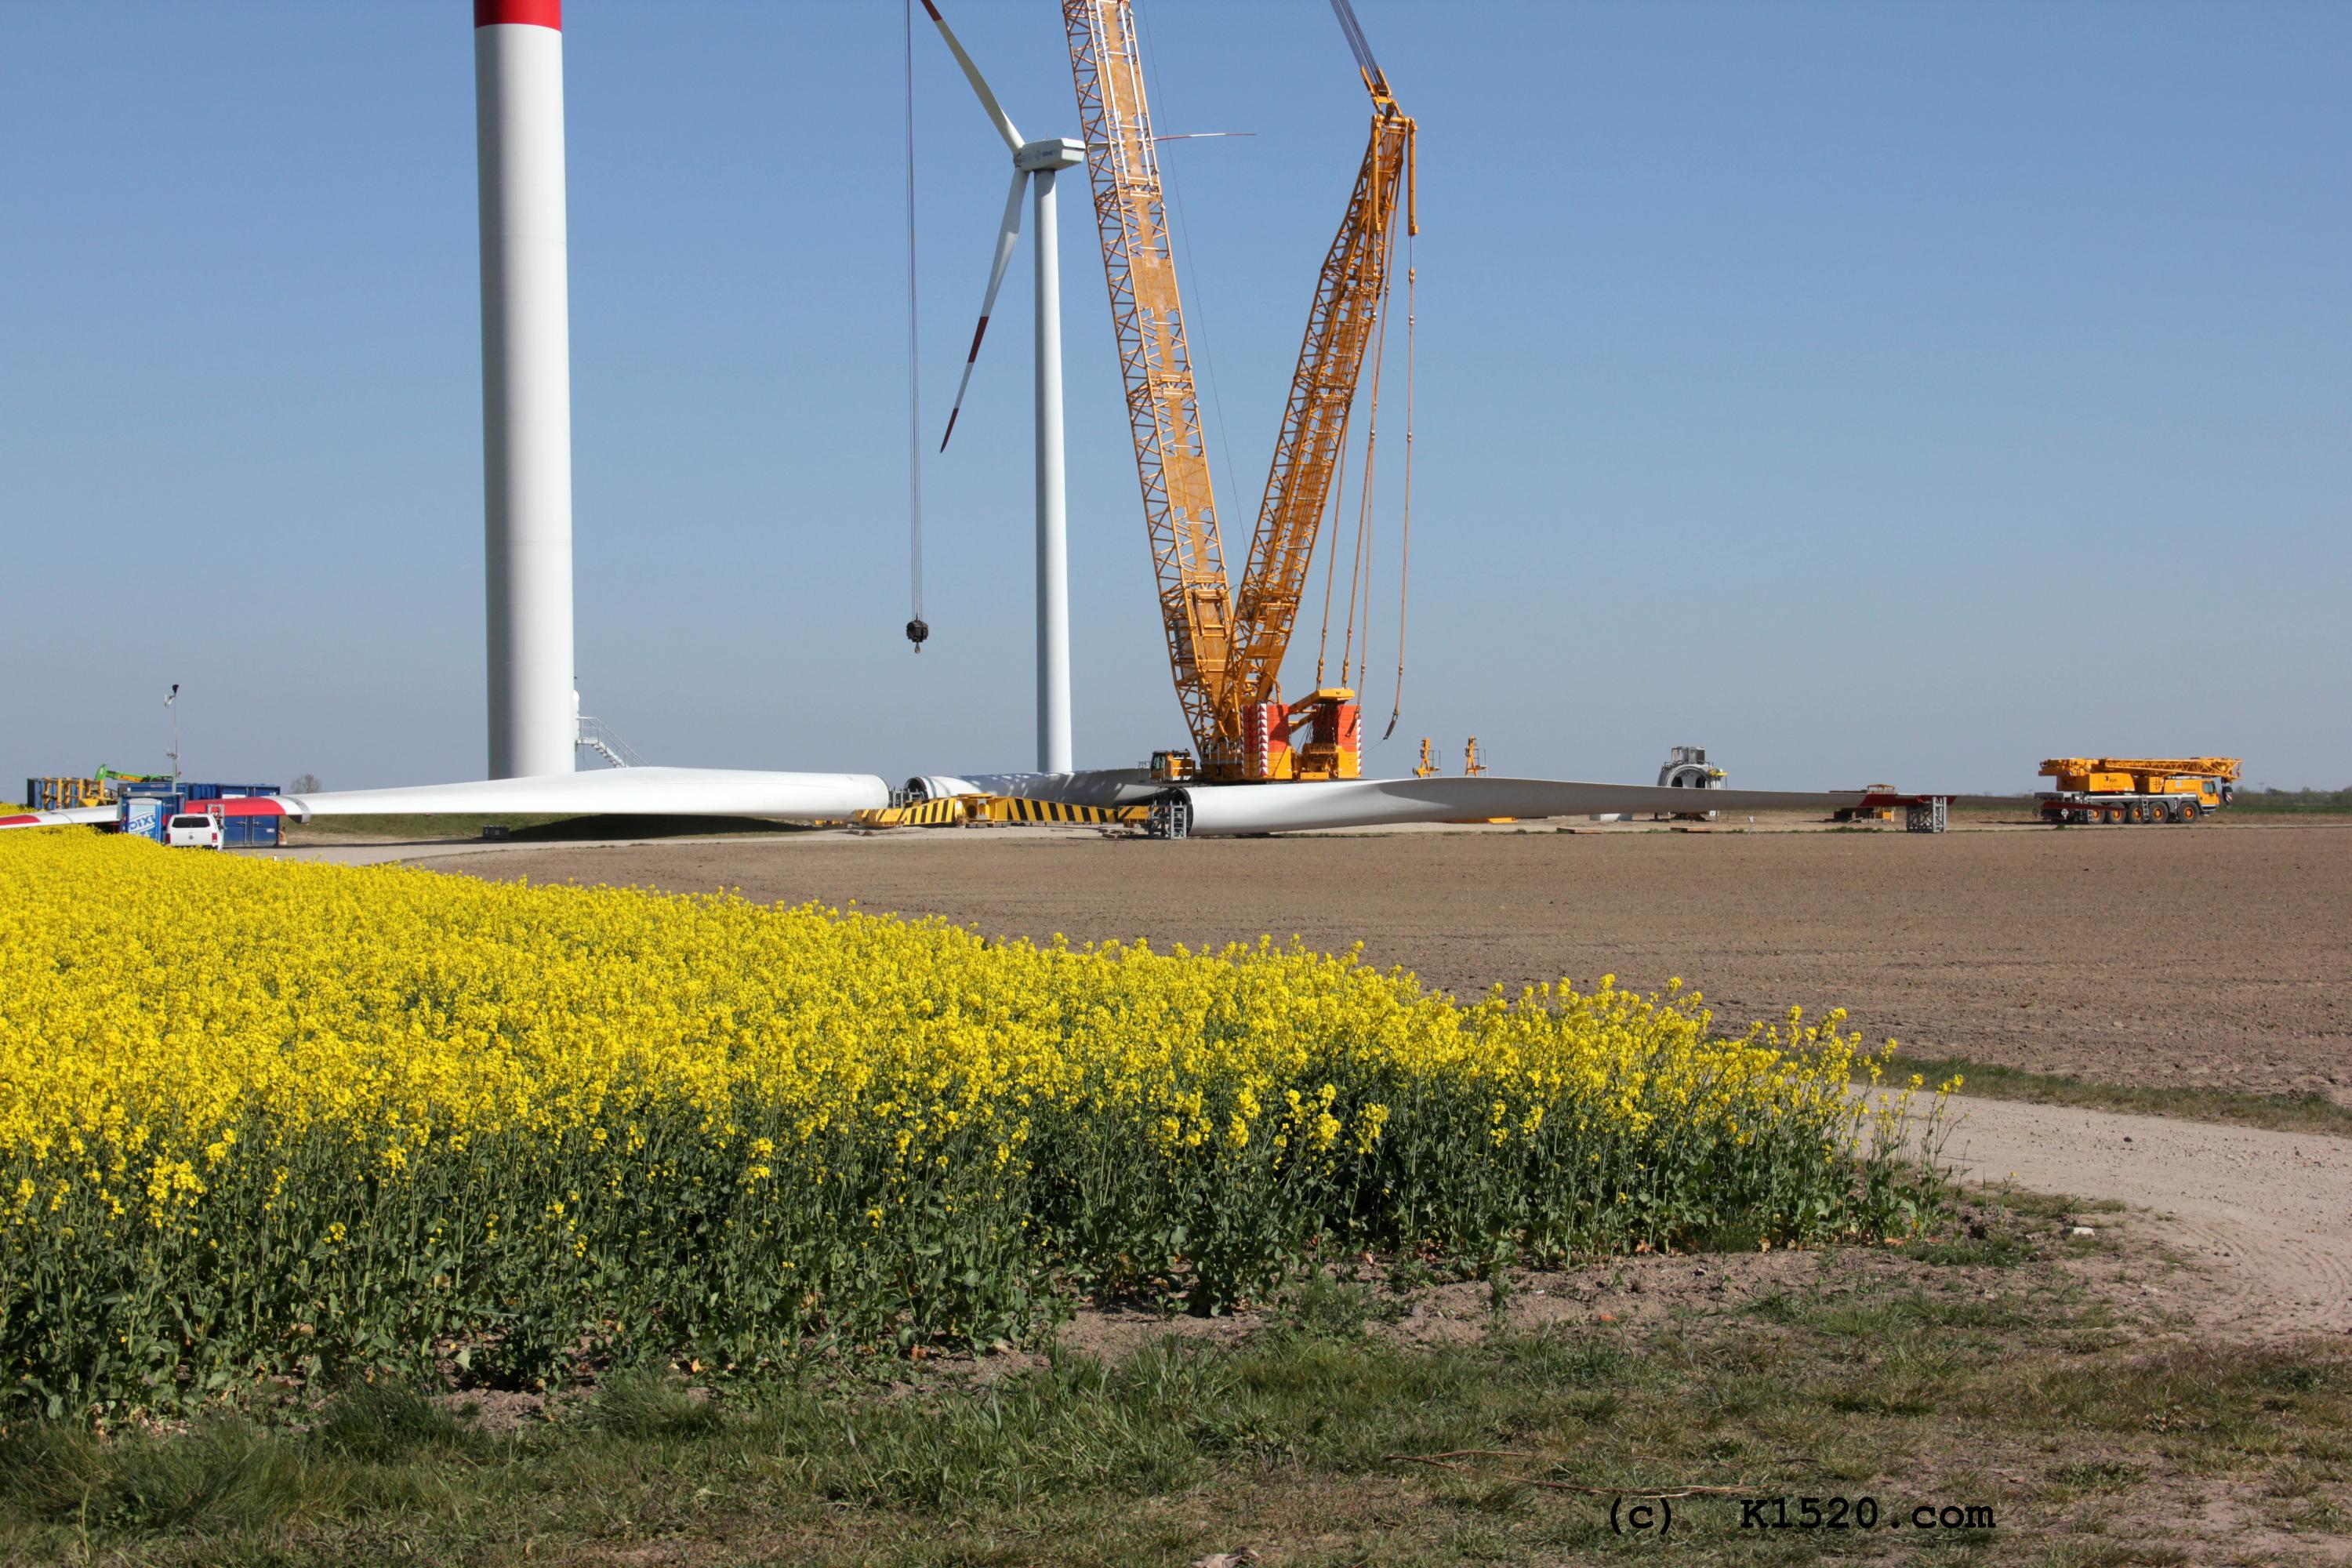 Reparatur Windräder im Windpark Arneburg/Elbe 04/2020,
  Kraneinsatz, Größenvergleich PKW und Kran